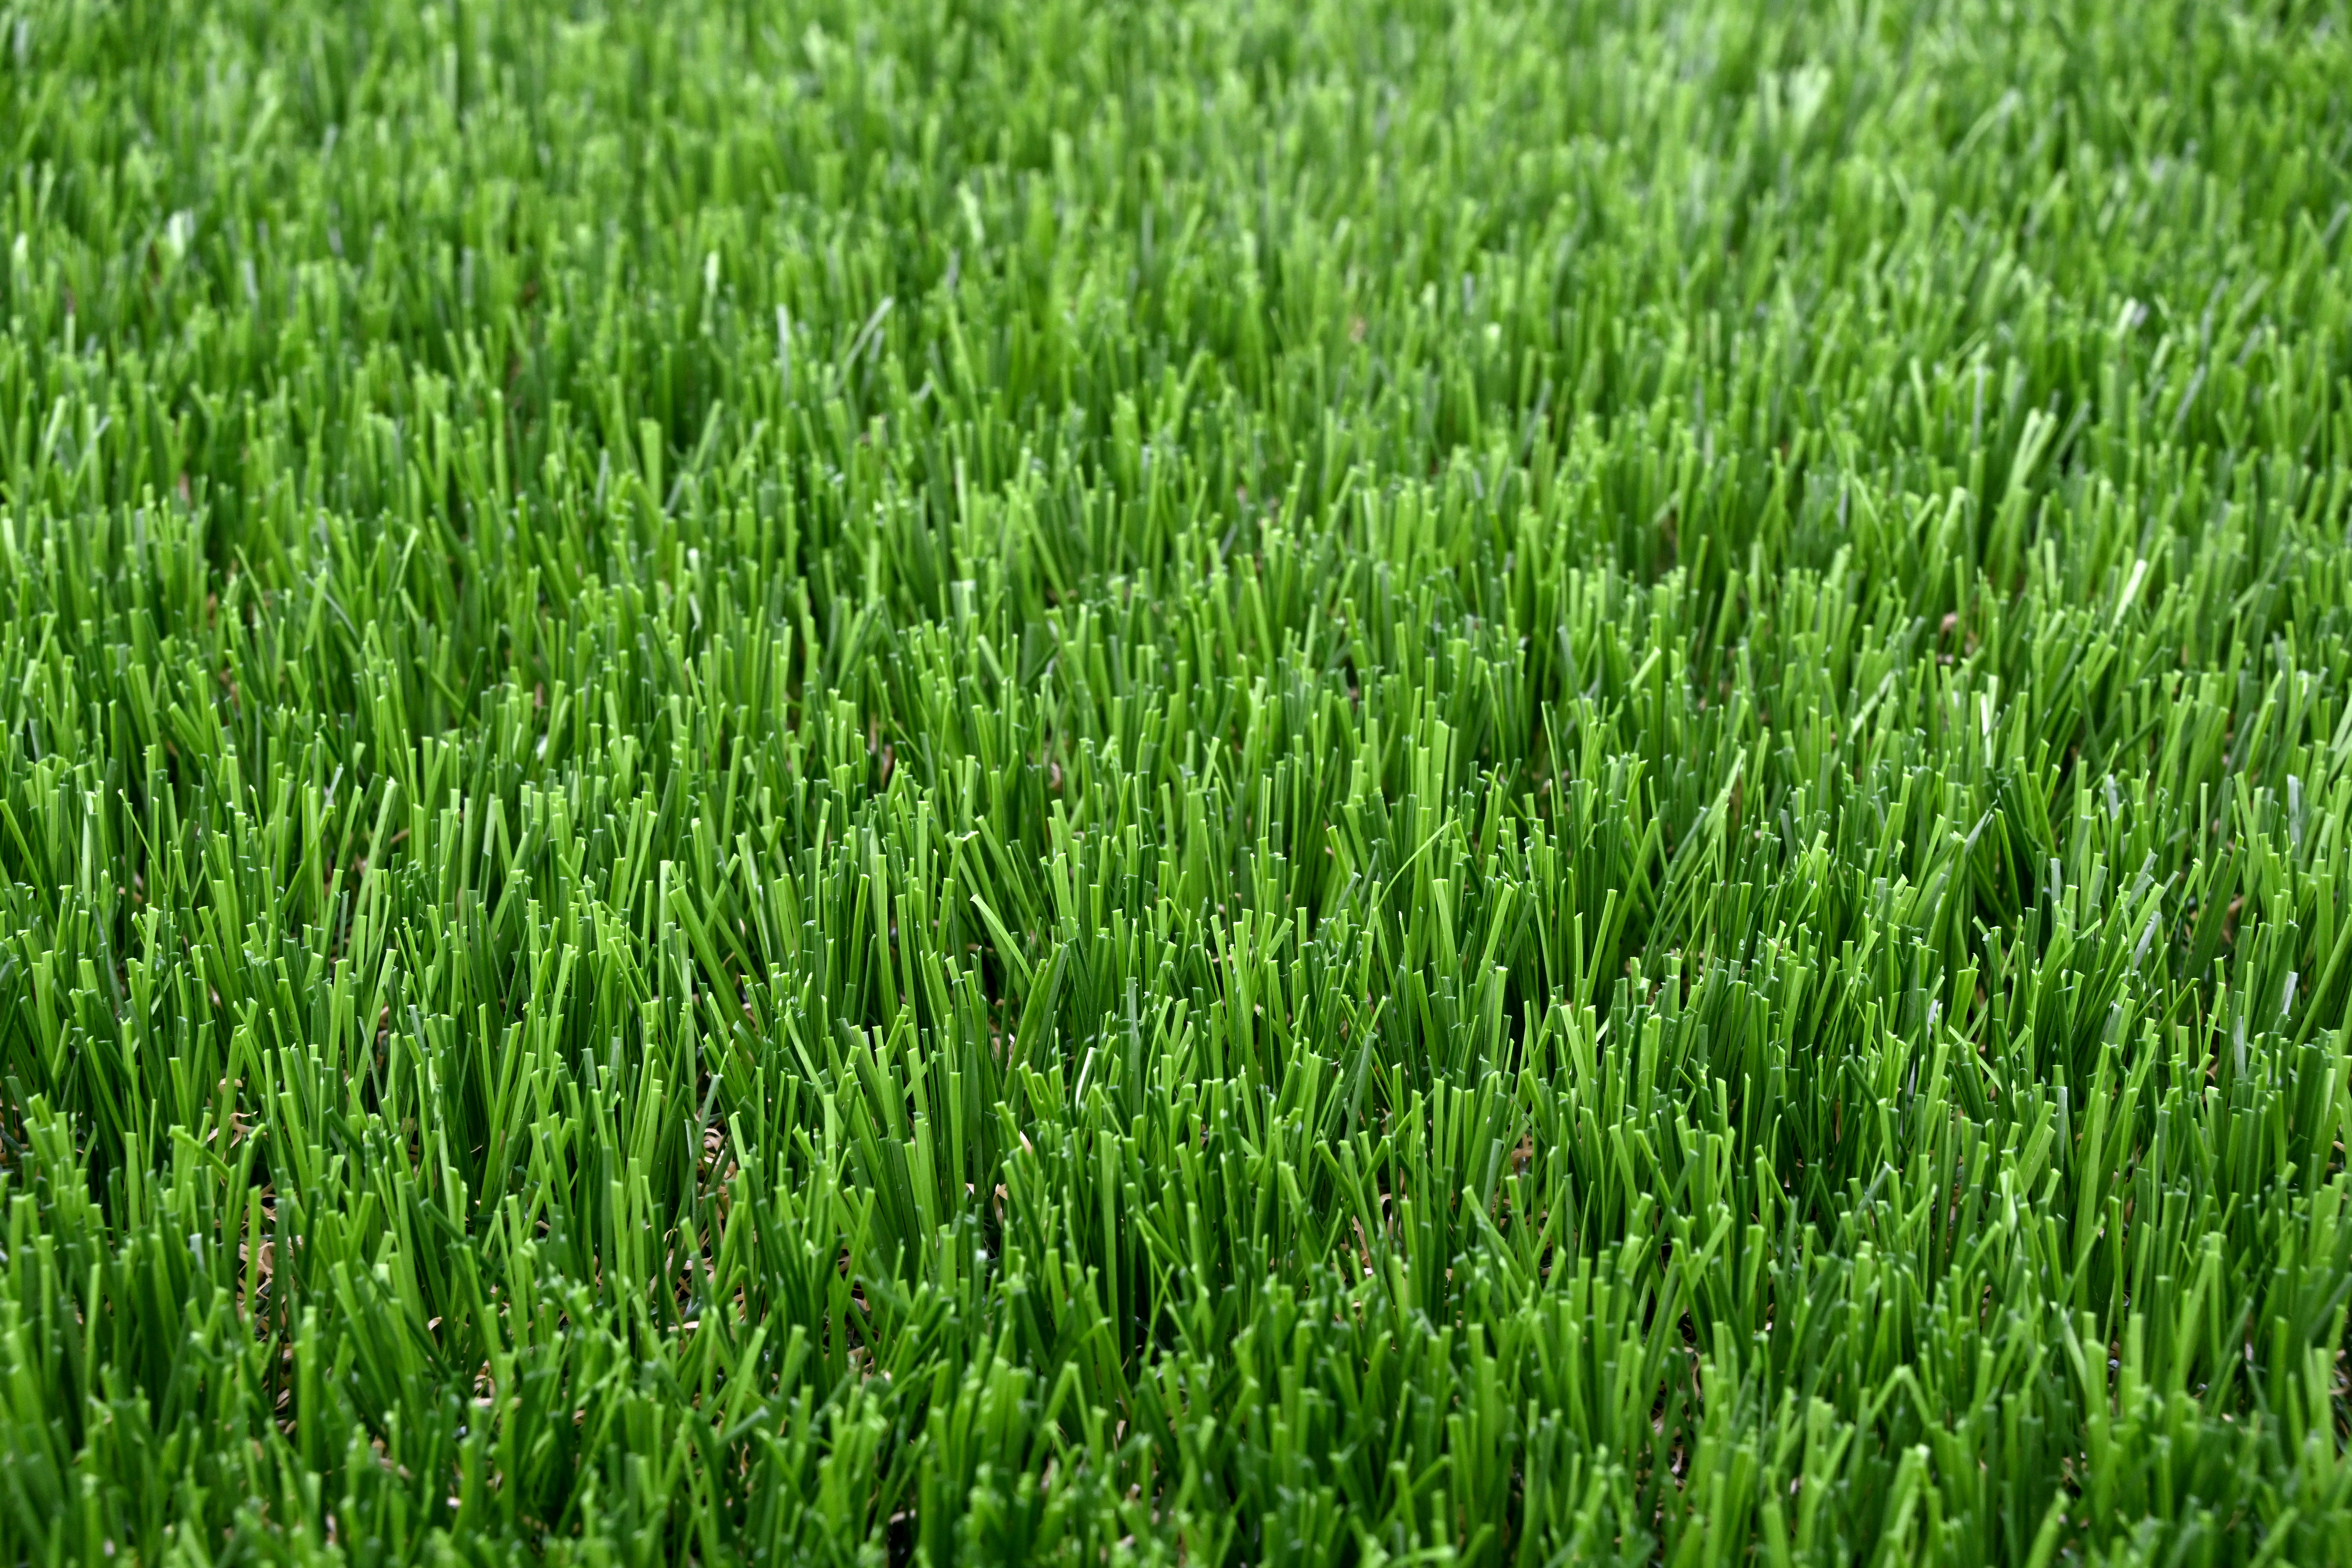 Vještačka trava debljina 40mm širina 2m Garland Grass